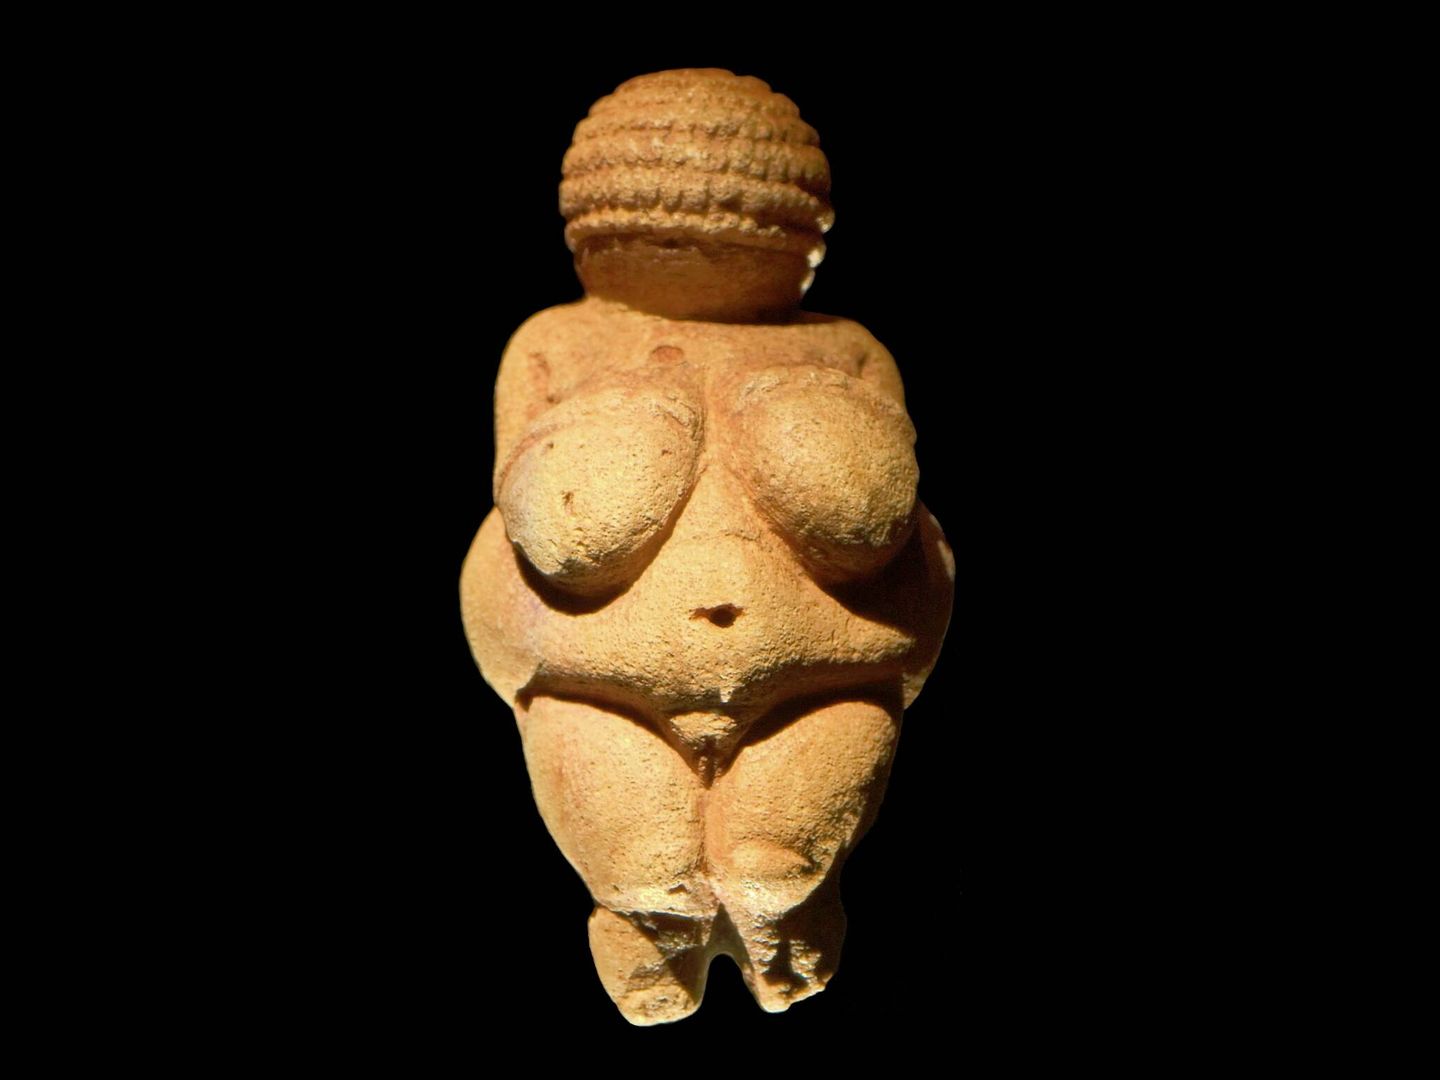 Una Venus paleolítica entrada en carnes. (Wikimedia)